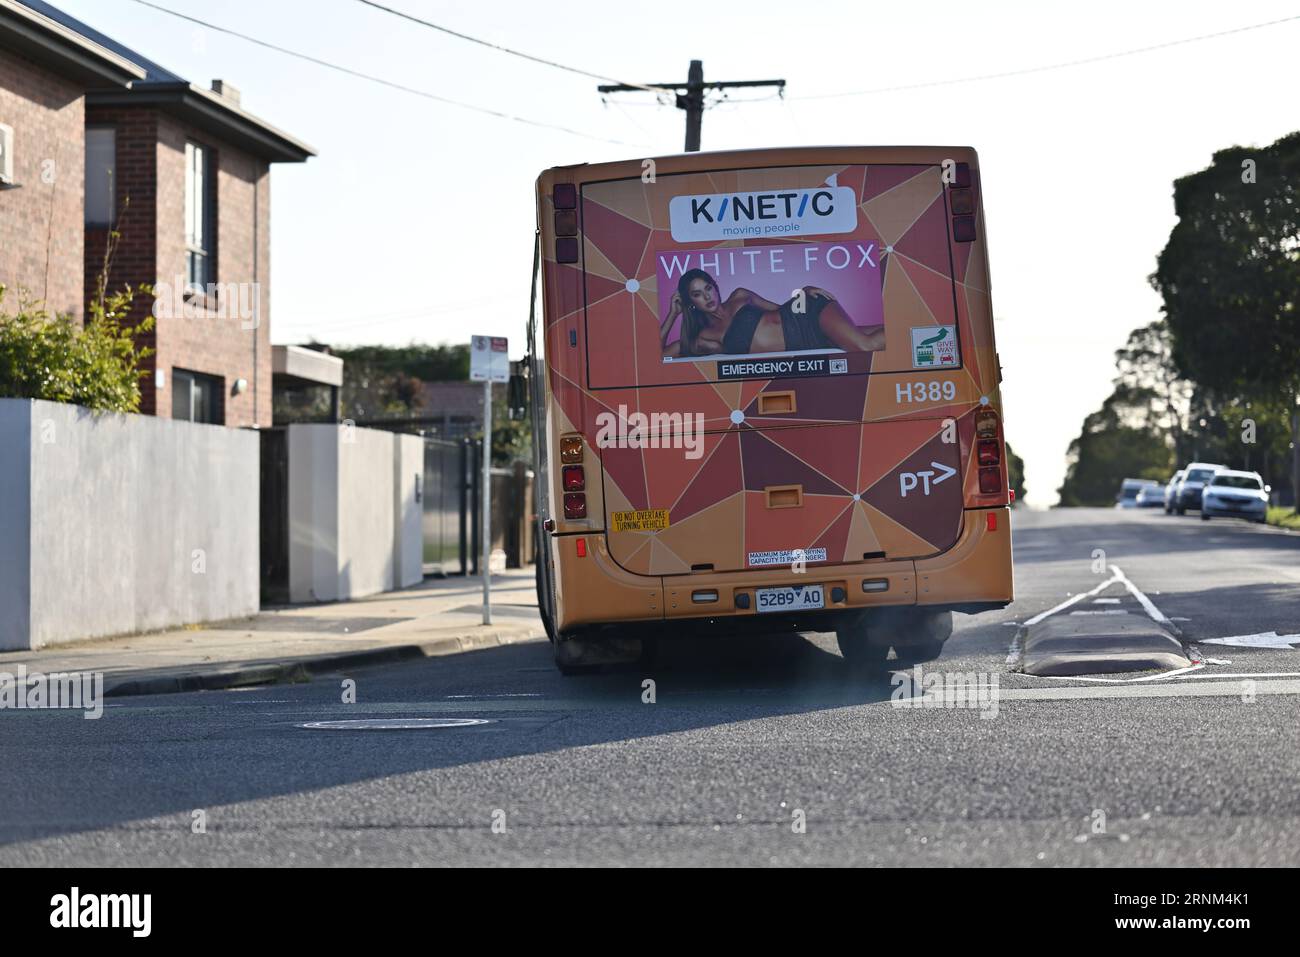 Vue arrière d'un bus Volgren à toit ouvrant PTV, exploité par Kinetic Melbourne, alors qu'il tourne à une intersection tout en émettant des fumées d'échappement Banque D'Images